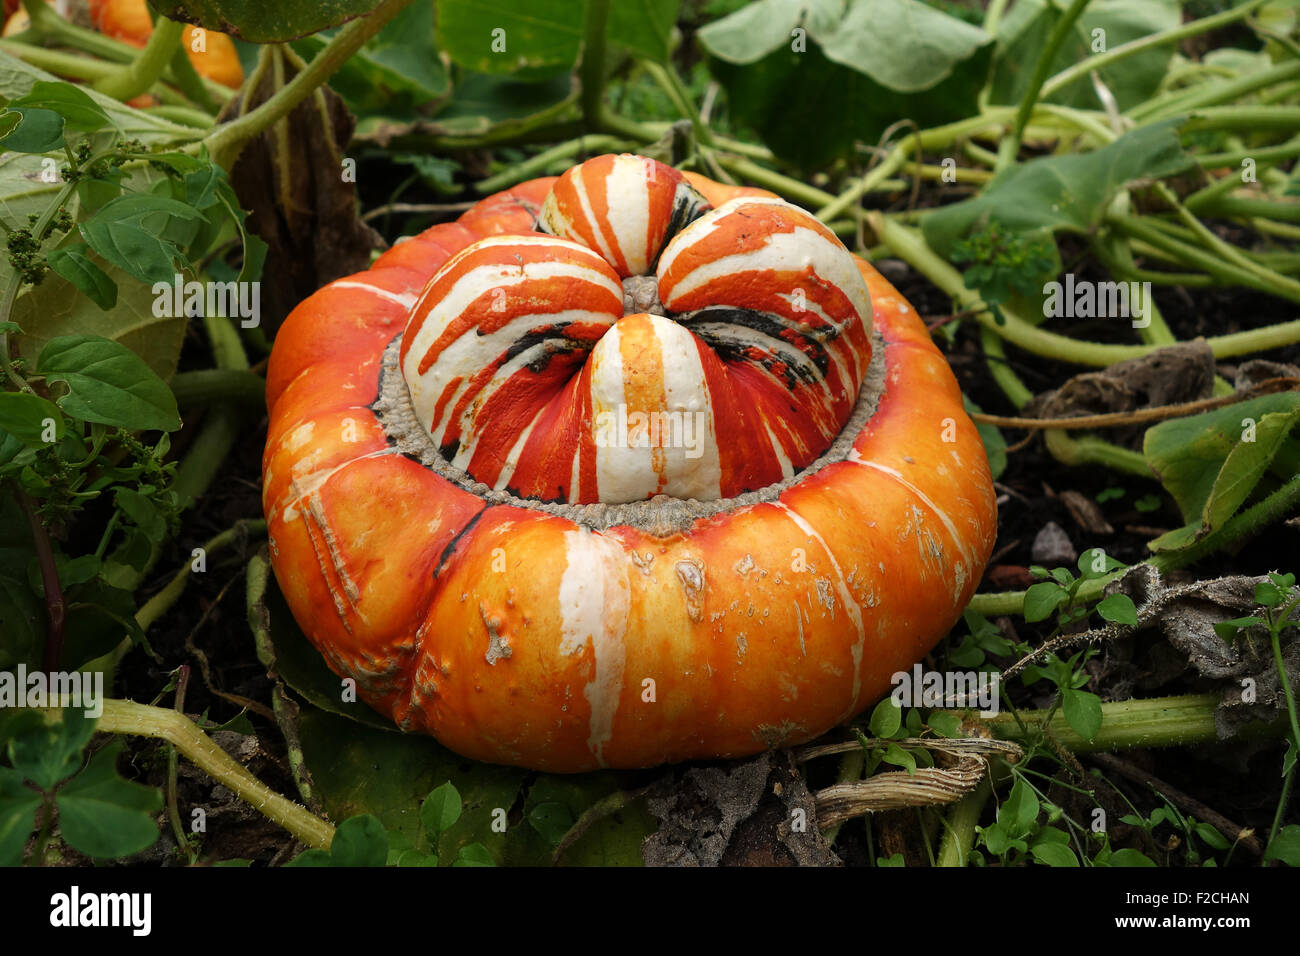 Turban squash pumpkin also known as Turk's Turban or French Turban ...